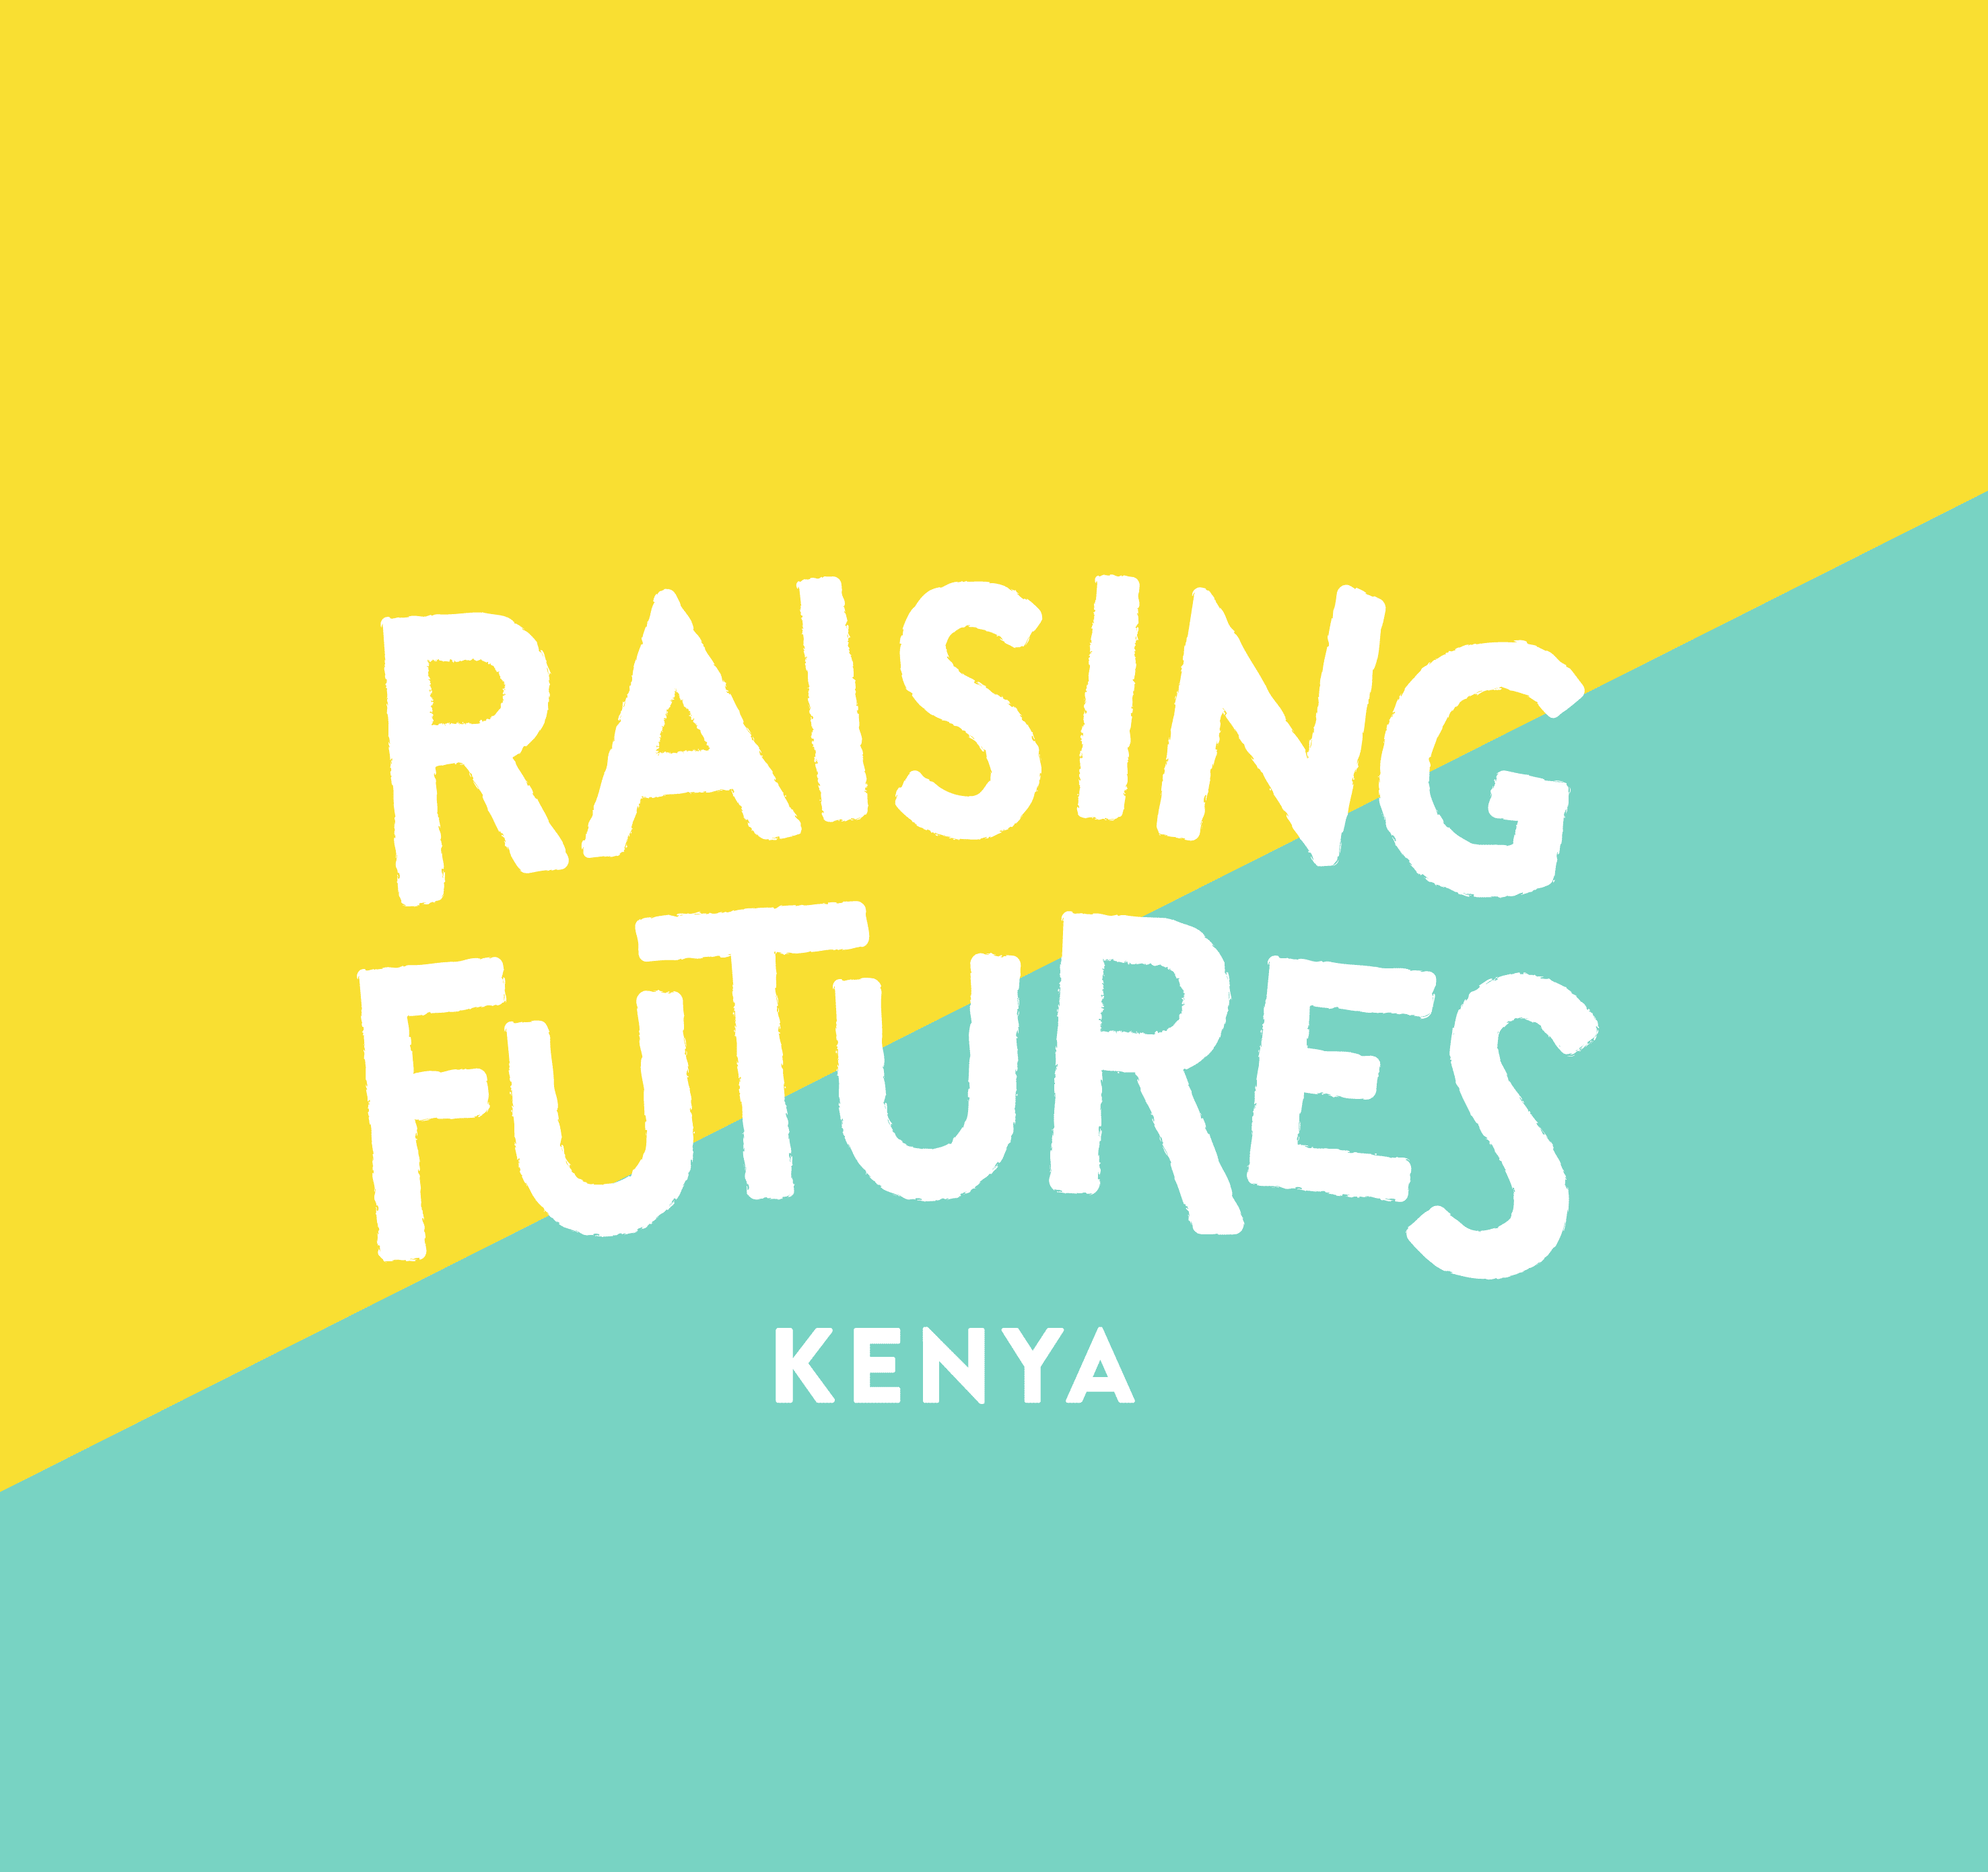 Vision Africa becomes Raising Futures Kenya!